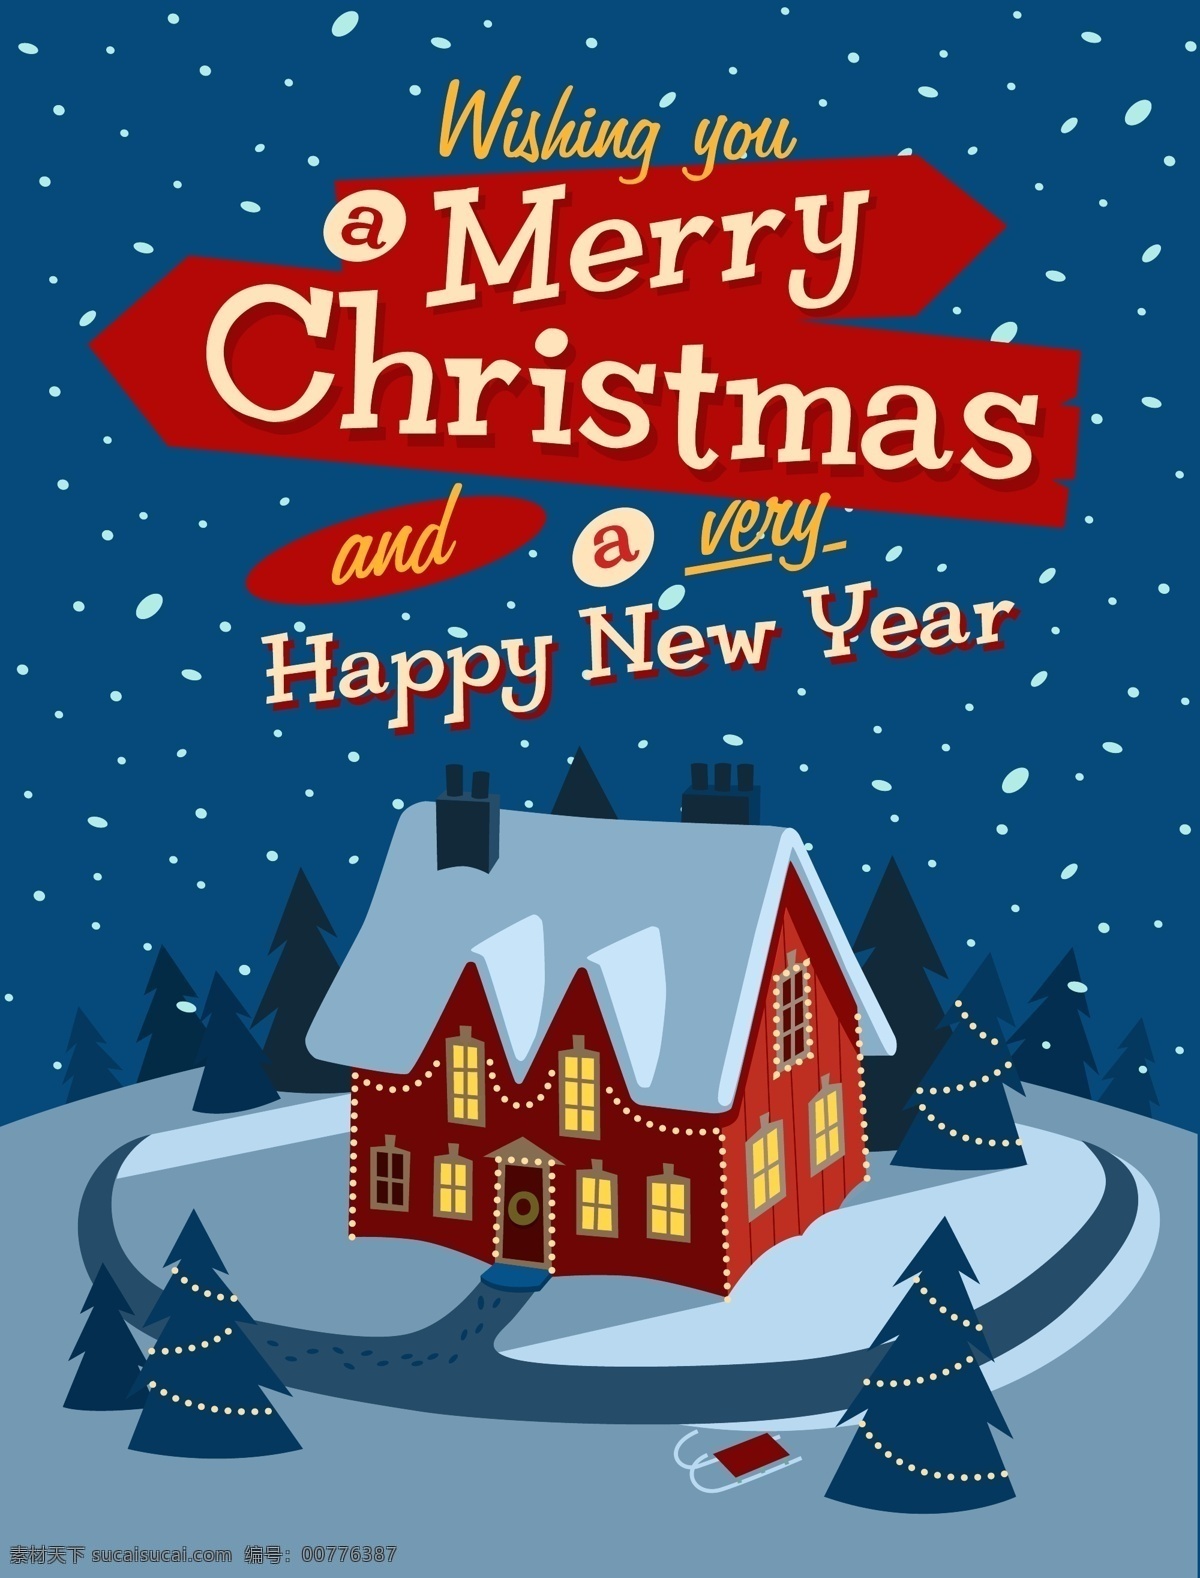 背景 插画 房屋 卡通 蓝色 圣诞节 圣诞树 矢量 夜景 手绘 童趣 雪景